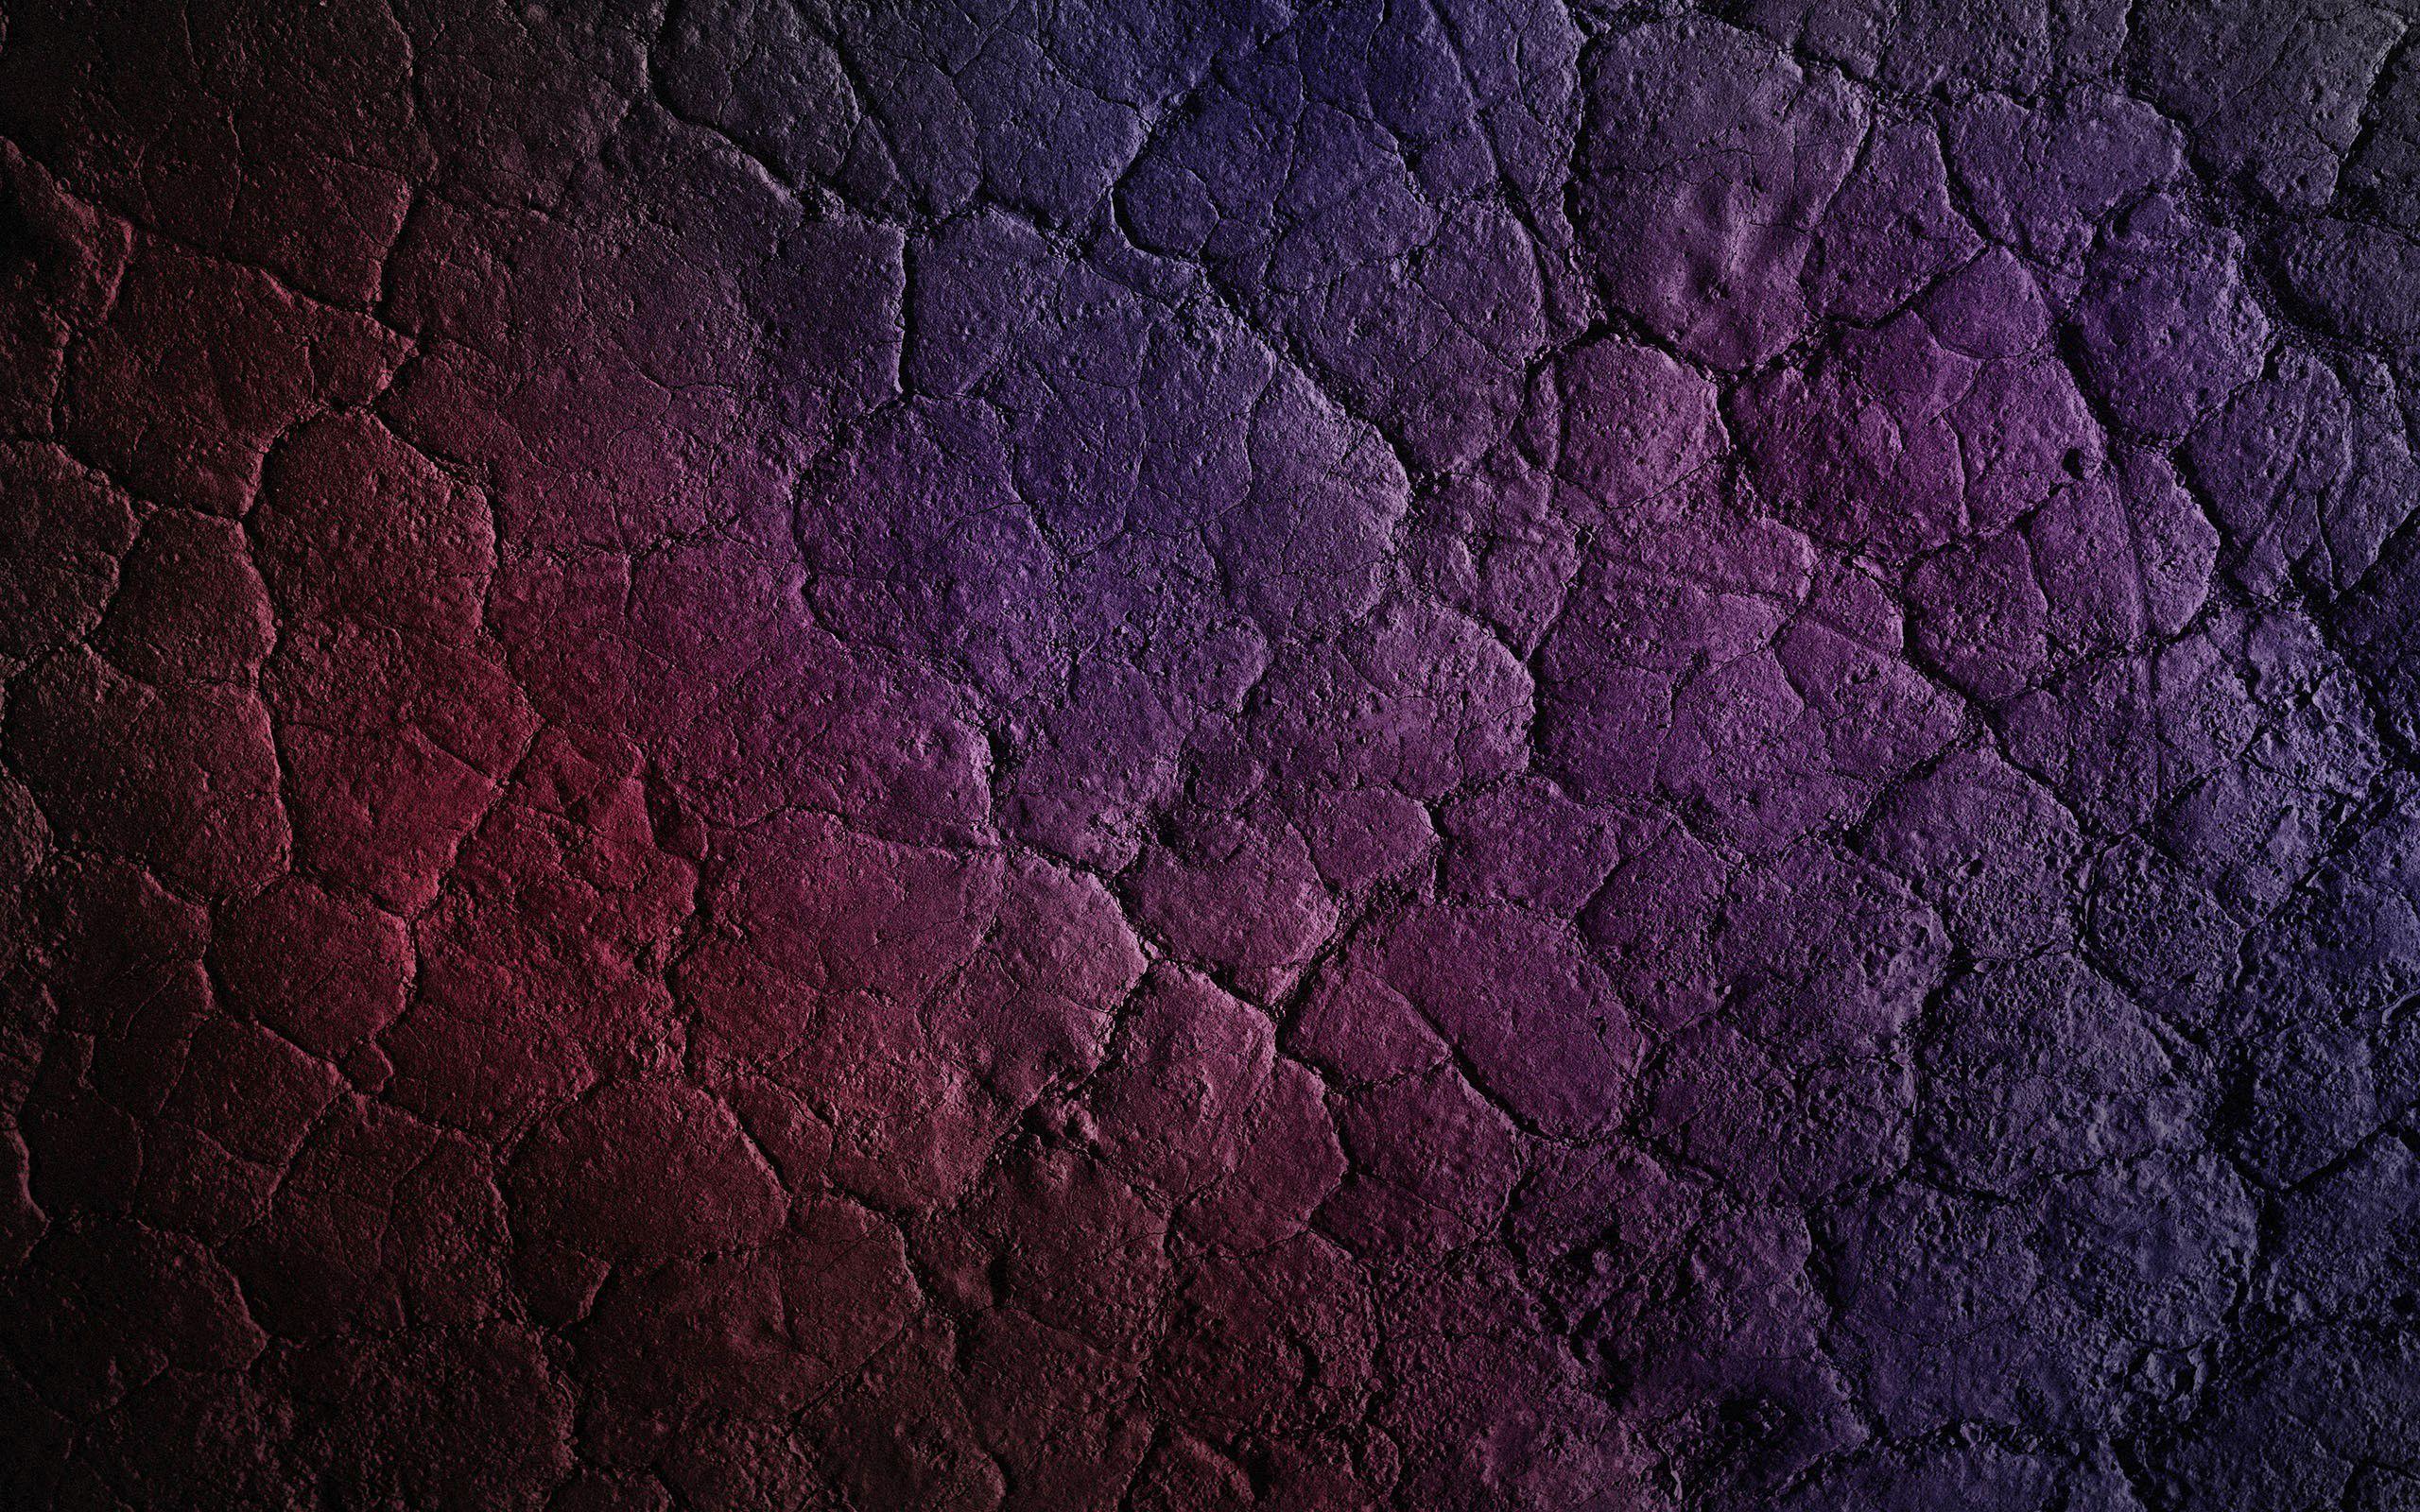 Soil on Mars HD desktop wallpaper, Widescreen, High Definition